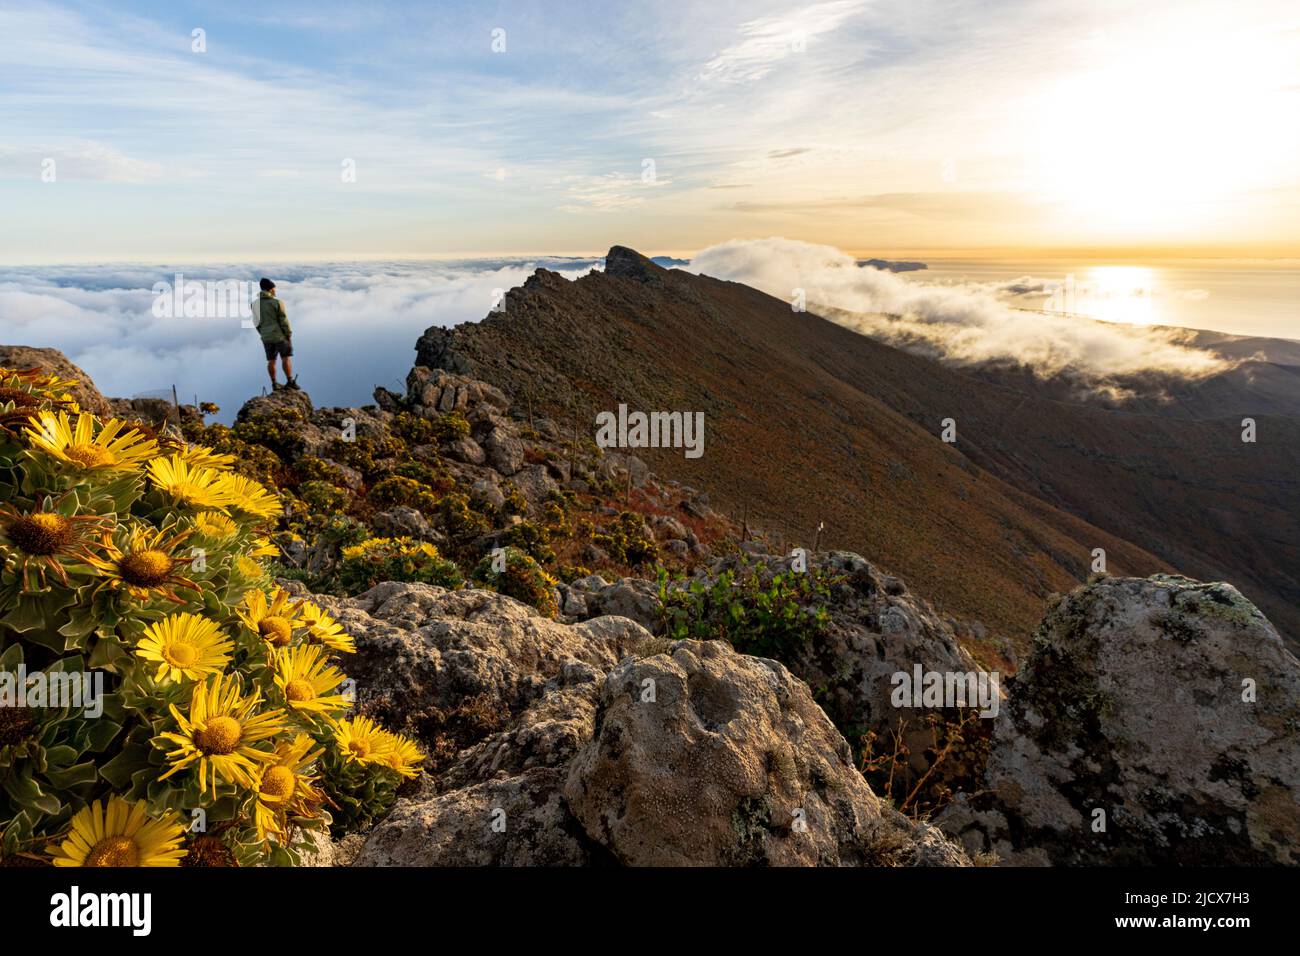 Uomo che guarda l'alba in piedi sulla cima rocciosa di Pico de la Zarza, la montagna più alta di Fuerteventura, Isole Canarie, Spagna, Atlantico, Europa Foto Stock